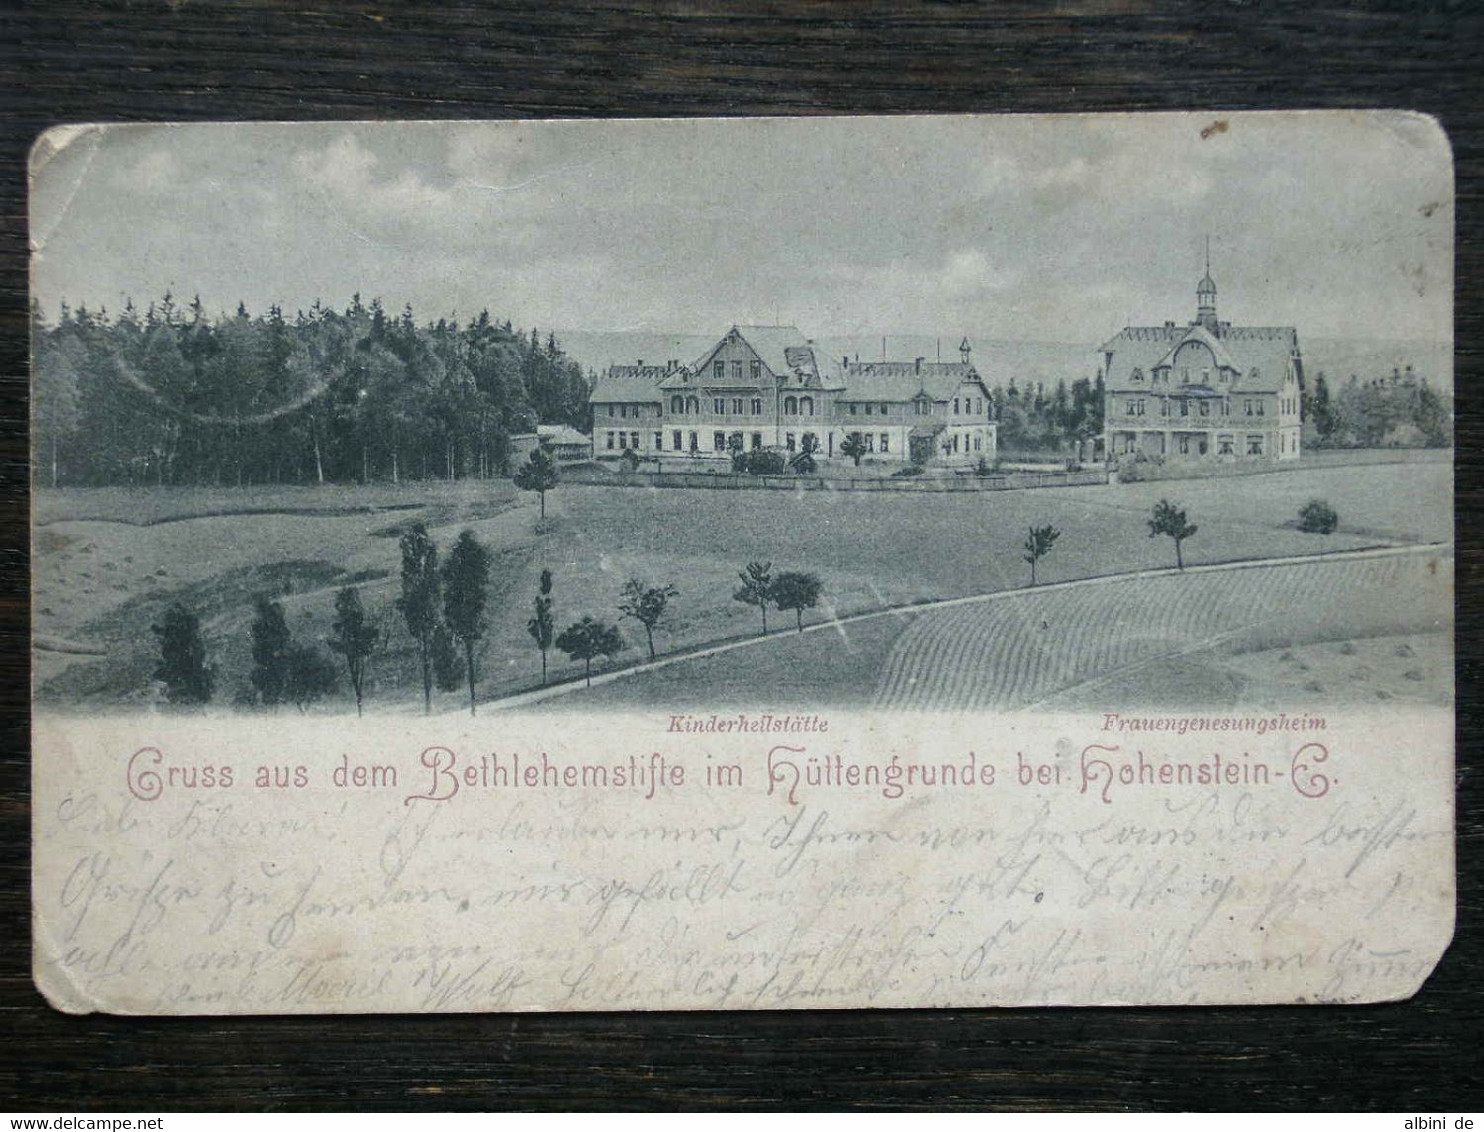 243 - HOHENSTEIN-ERNSTTHAL - Bethlehemstift Im Hüttengrunde - Kinderheilstätte - Frauengenesungsheim - 1902 - Hohenstein-Ernstthal